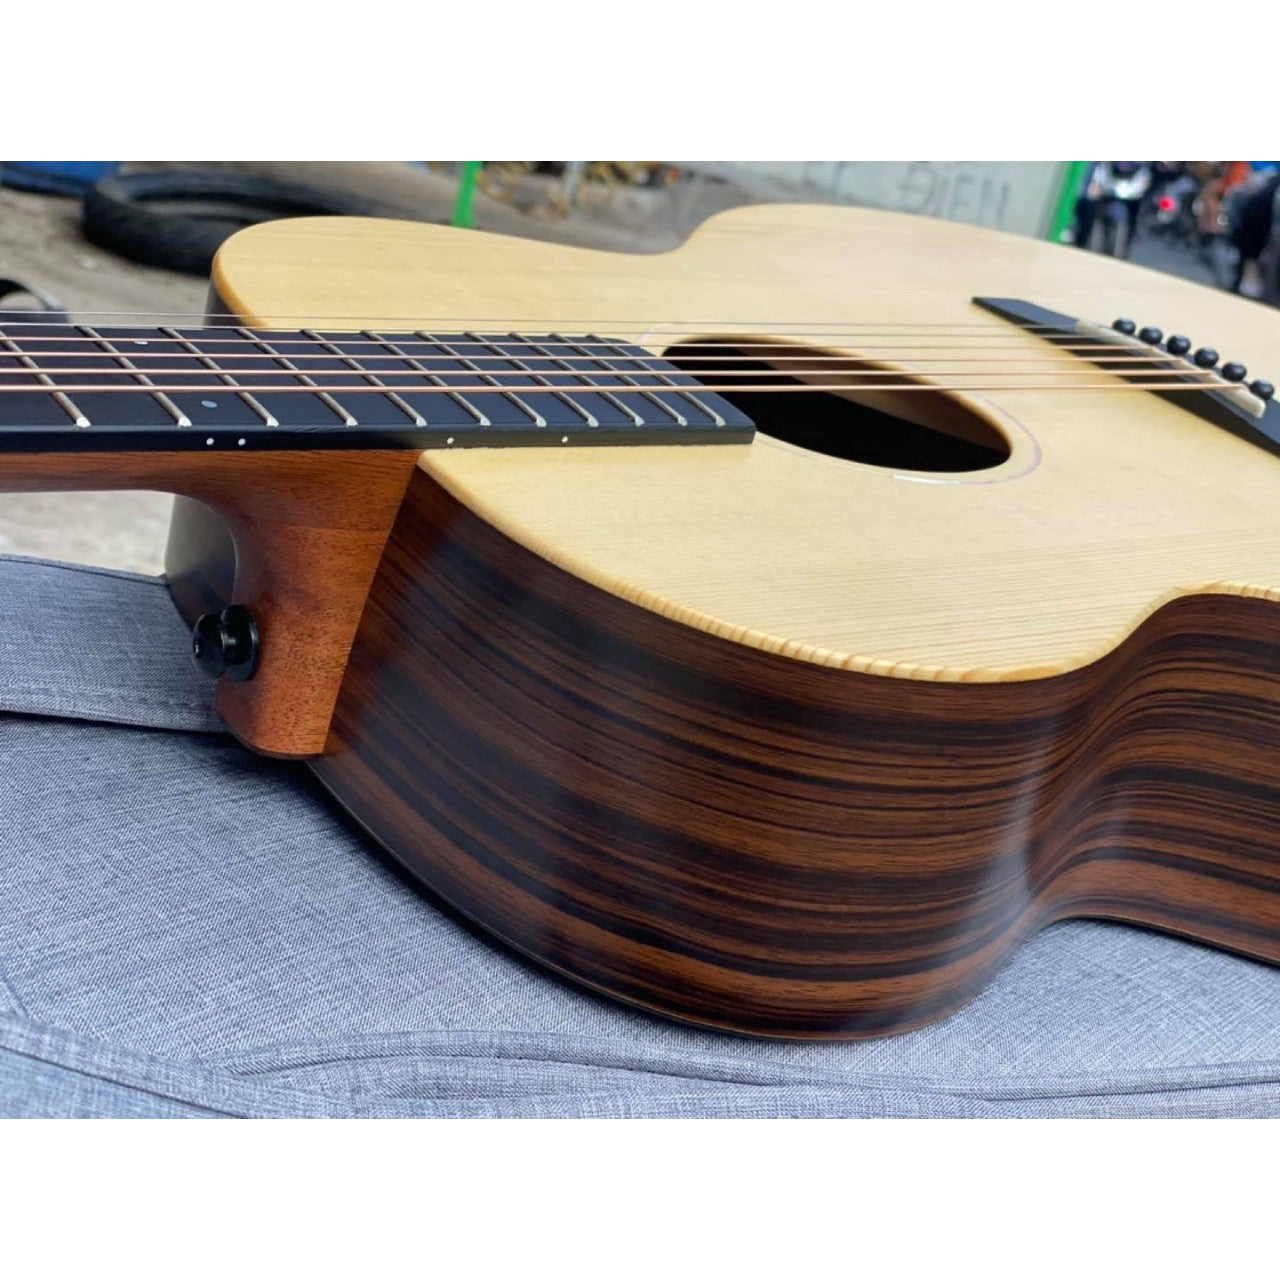 Đàn Guitar Acoustic Enya EM-X2 - Việt Music